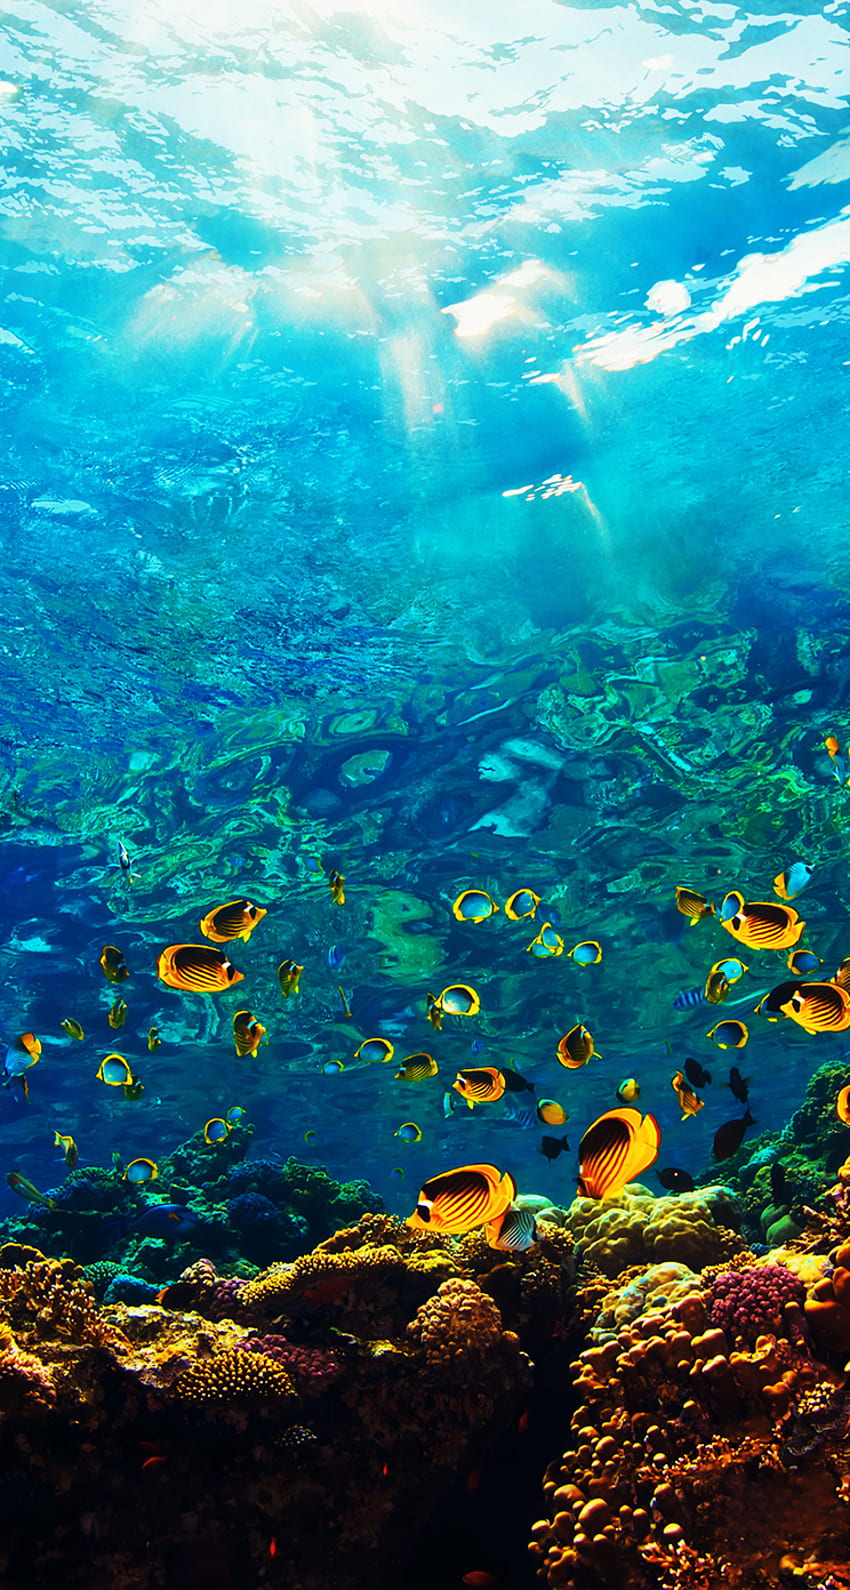 Thế giới dưới nước là một cuộc phiêu lưu tuyệt vời với hàng nghìn loài sinh vật kỳ diệu, từ cá sấu đến rùa biển, đến cá mập khổng lồ. Hãy khám phá thế giới kỳ thú này trong bức ảnh đầy mê hoặc này.